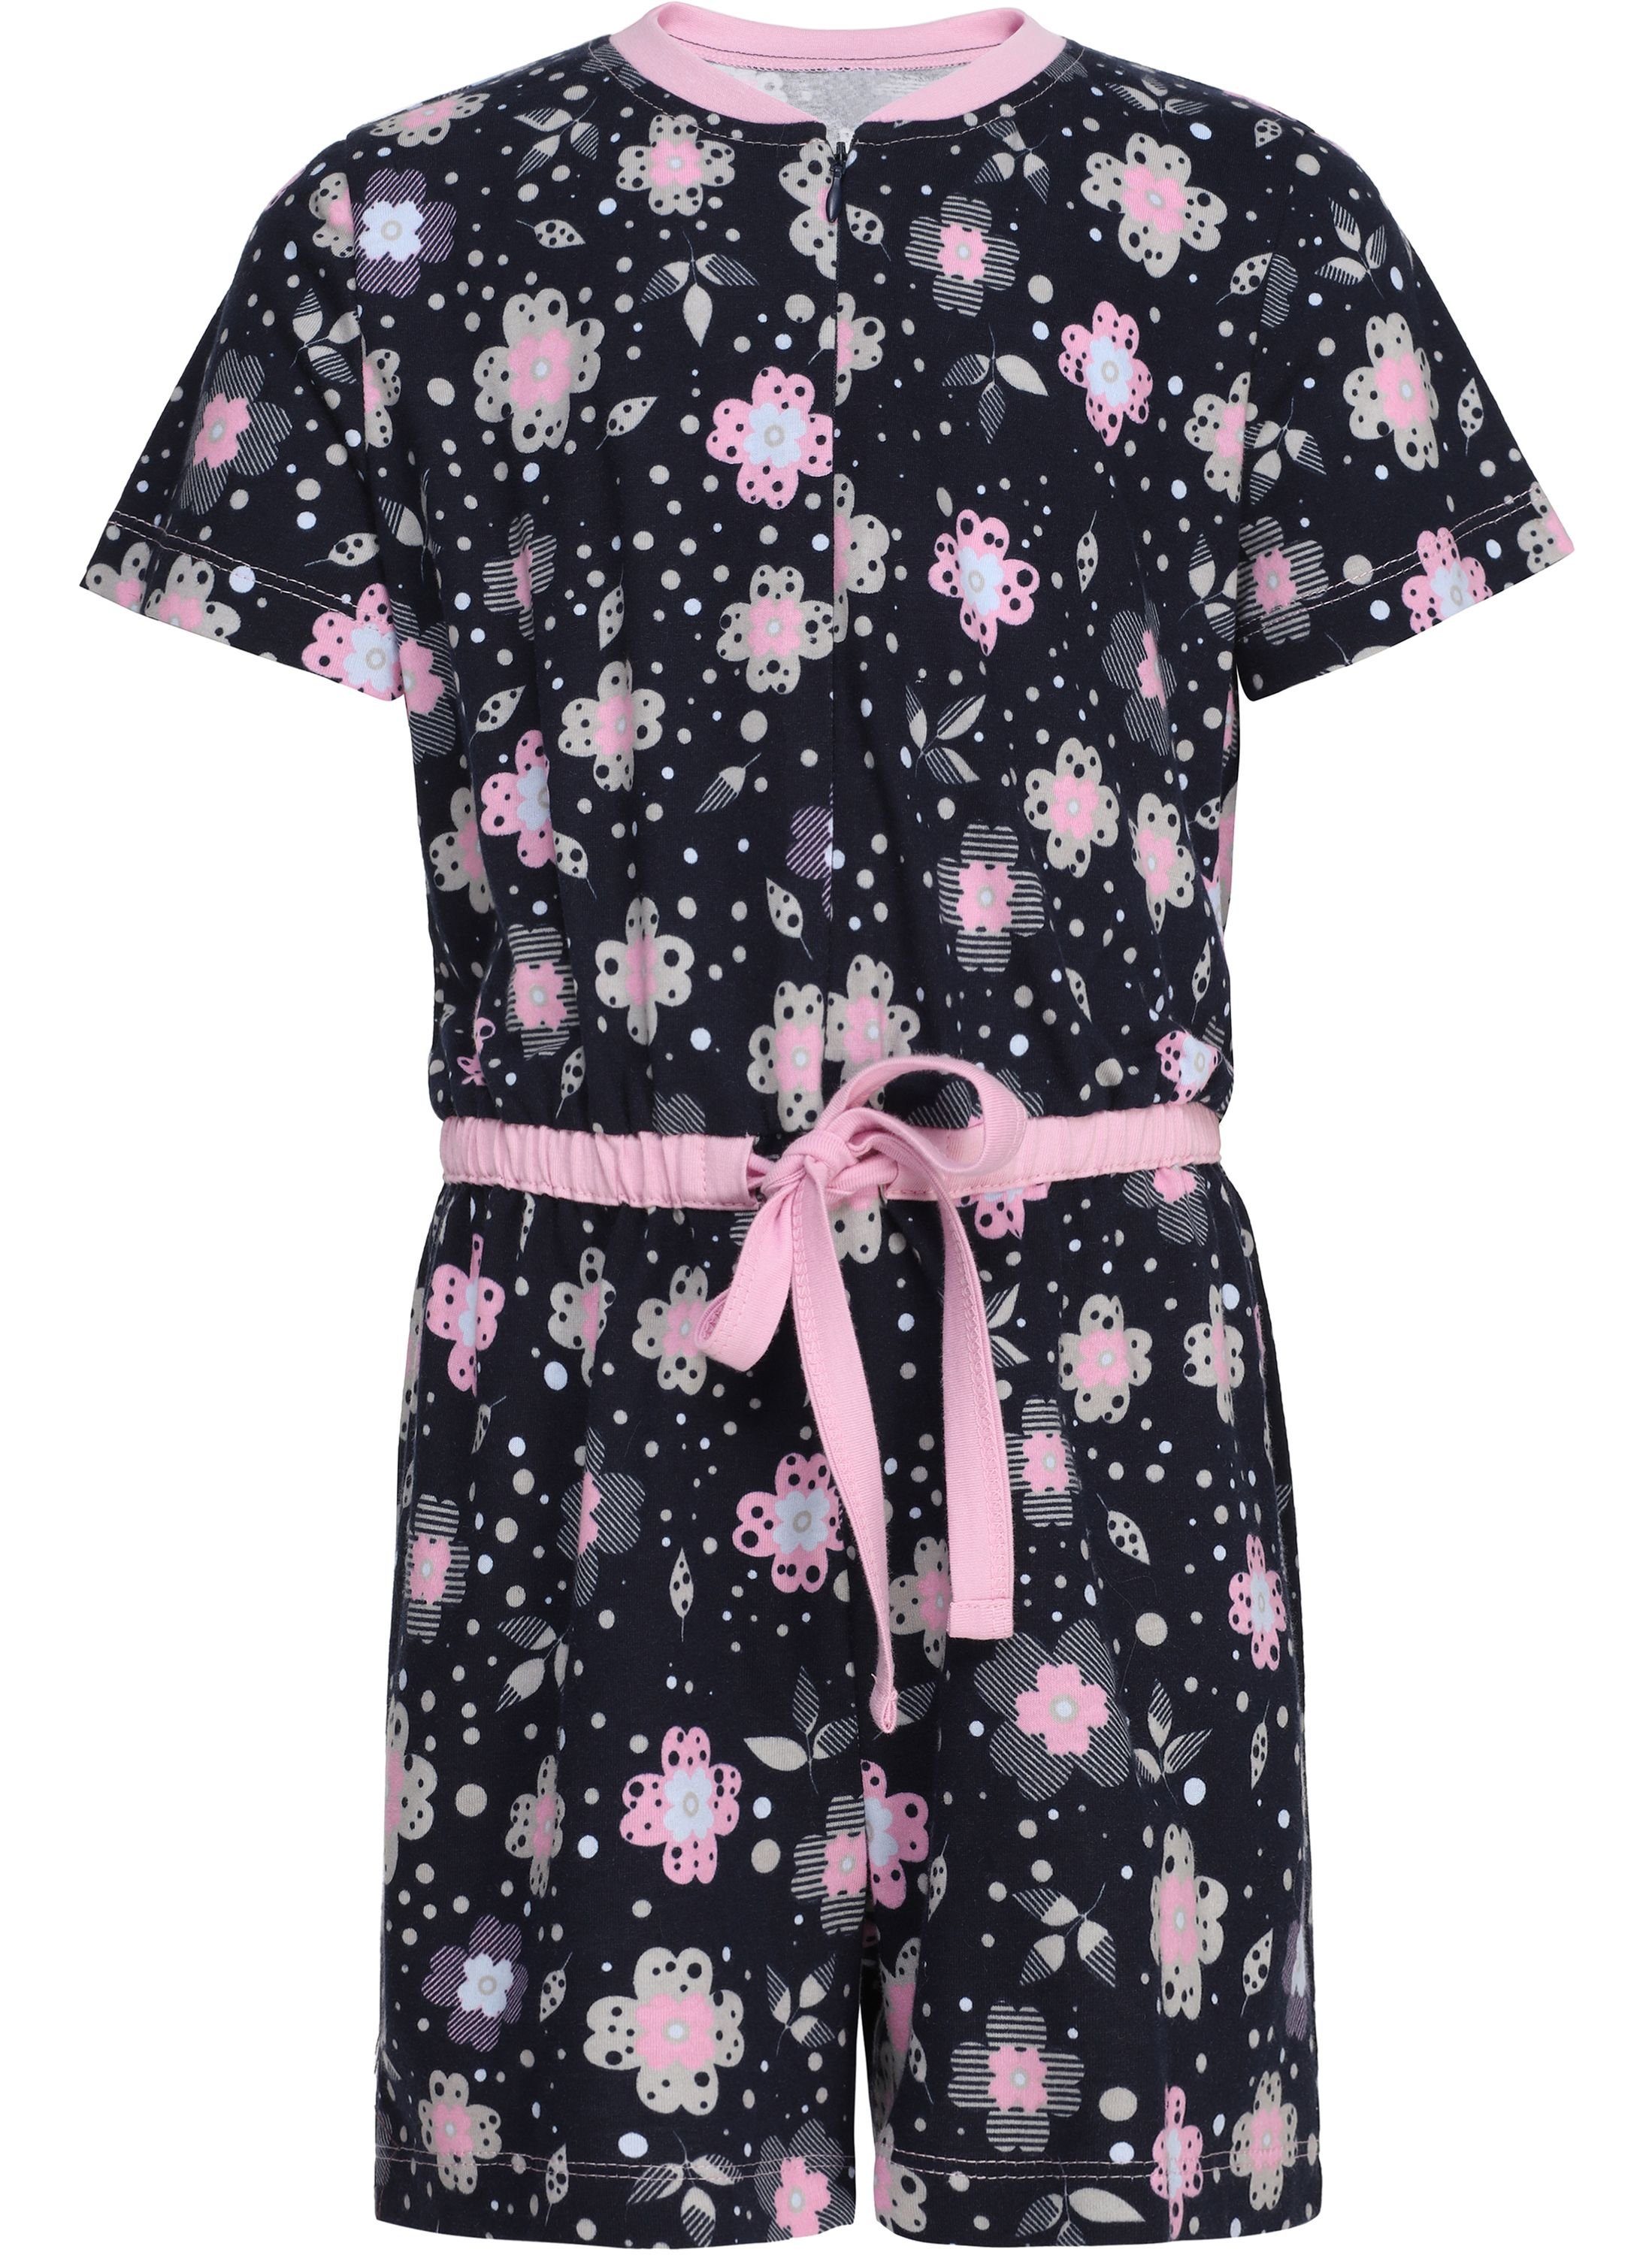 MS10-267 Short Schlafanzug Mädchen Style Merry Schlafanzug Overall Marine/Blumen